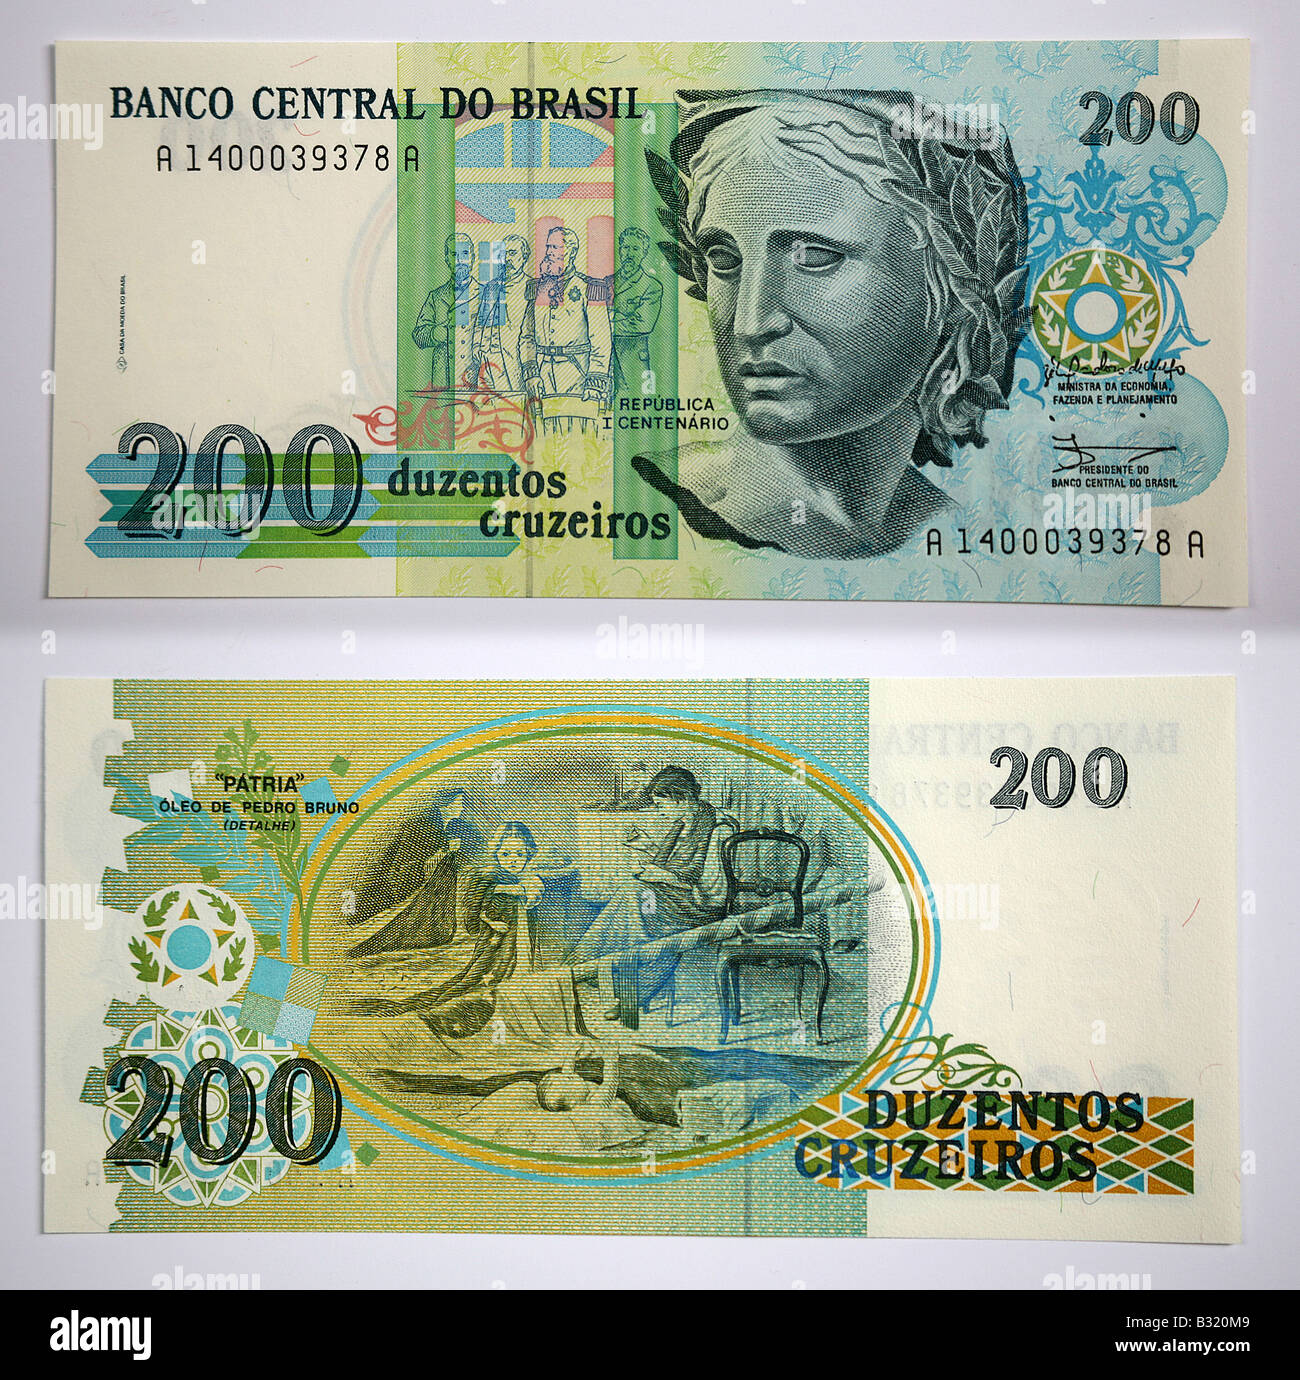 Brazilian Currency 100 Banco Central Do Brasil 200 Stock Photo